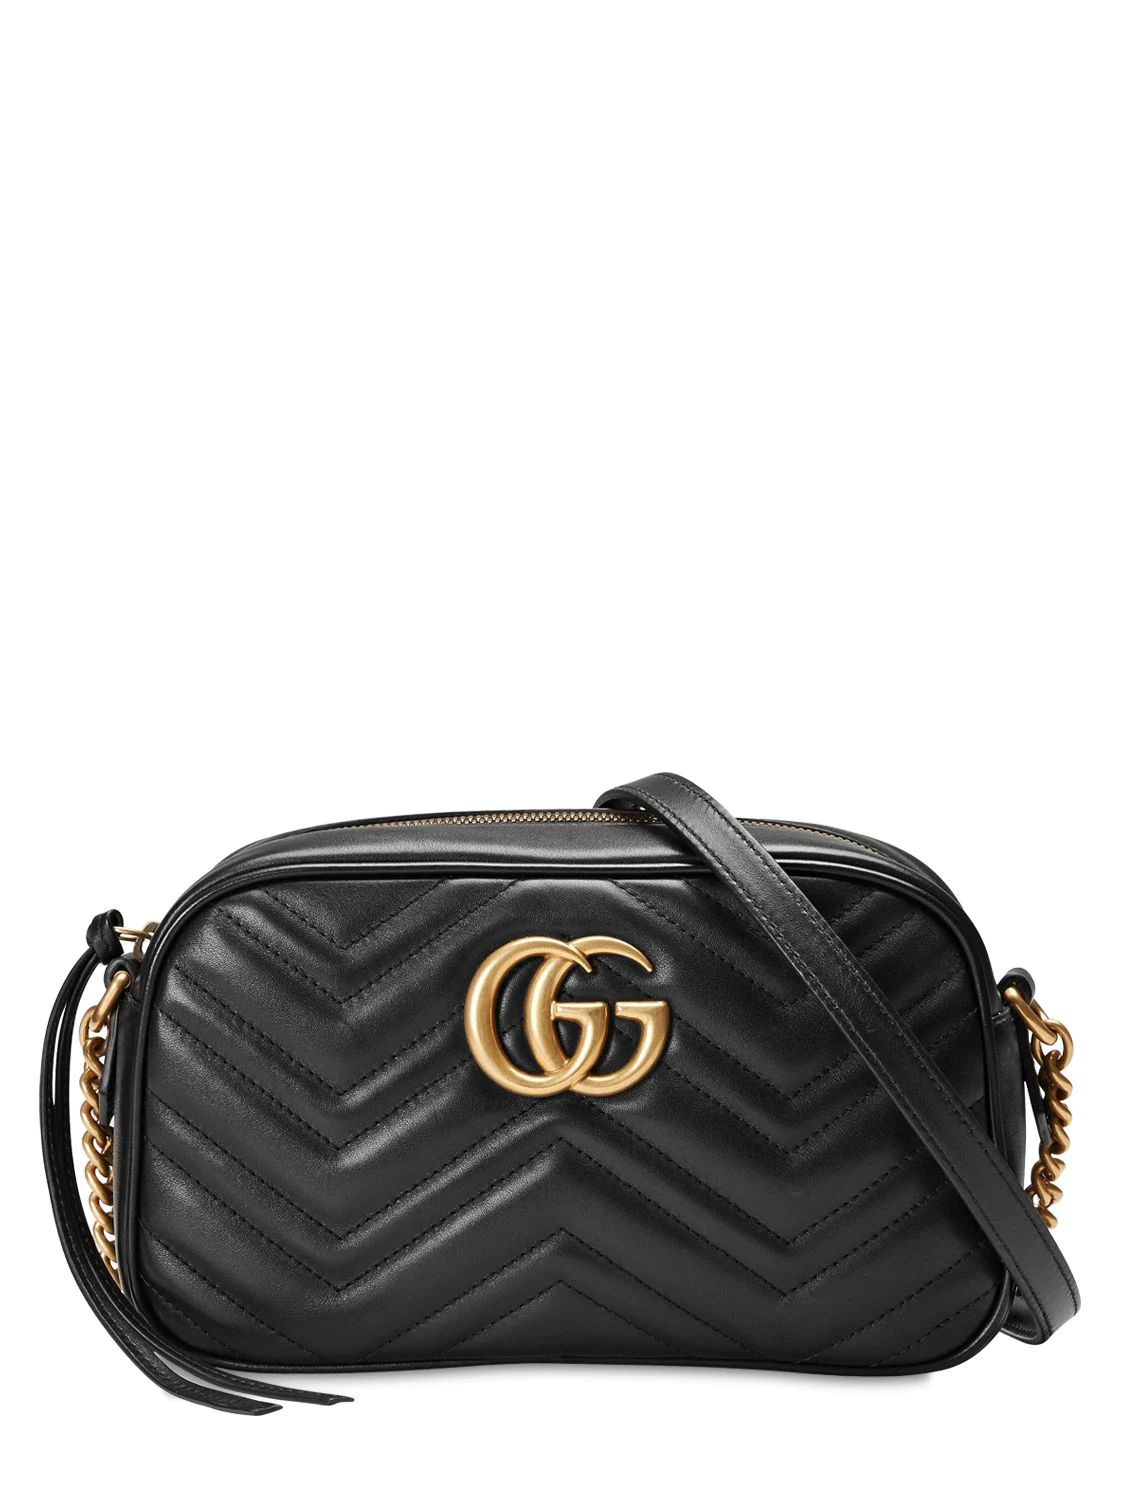 Gucci - Gg marmont leather camera bag - Black | Luisaviaroma | Luisaviaroma